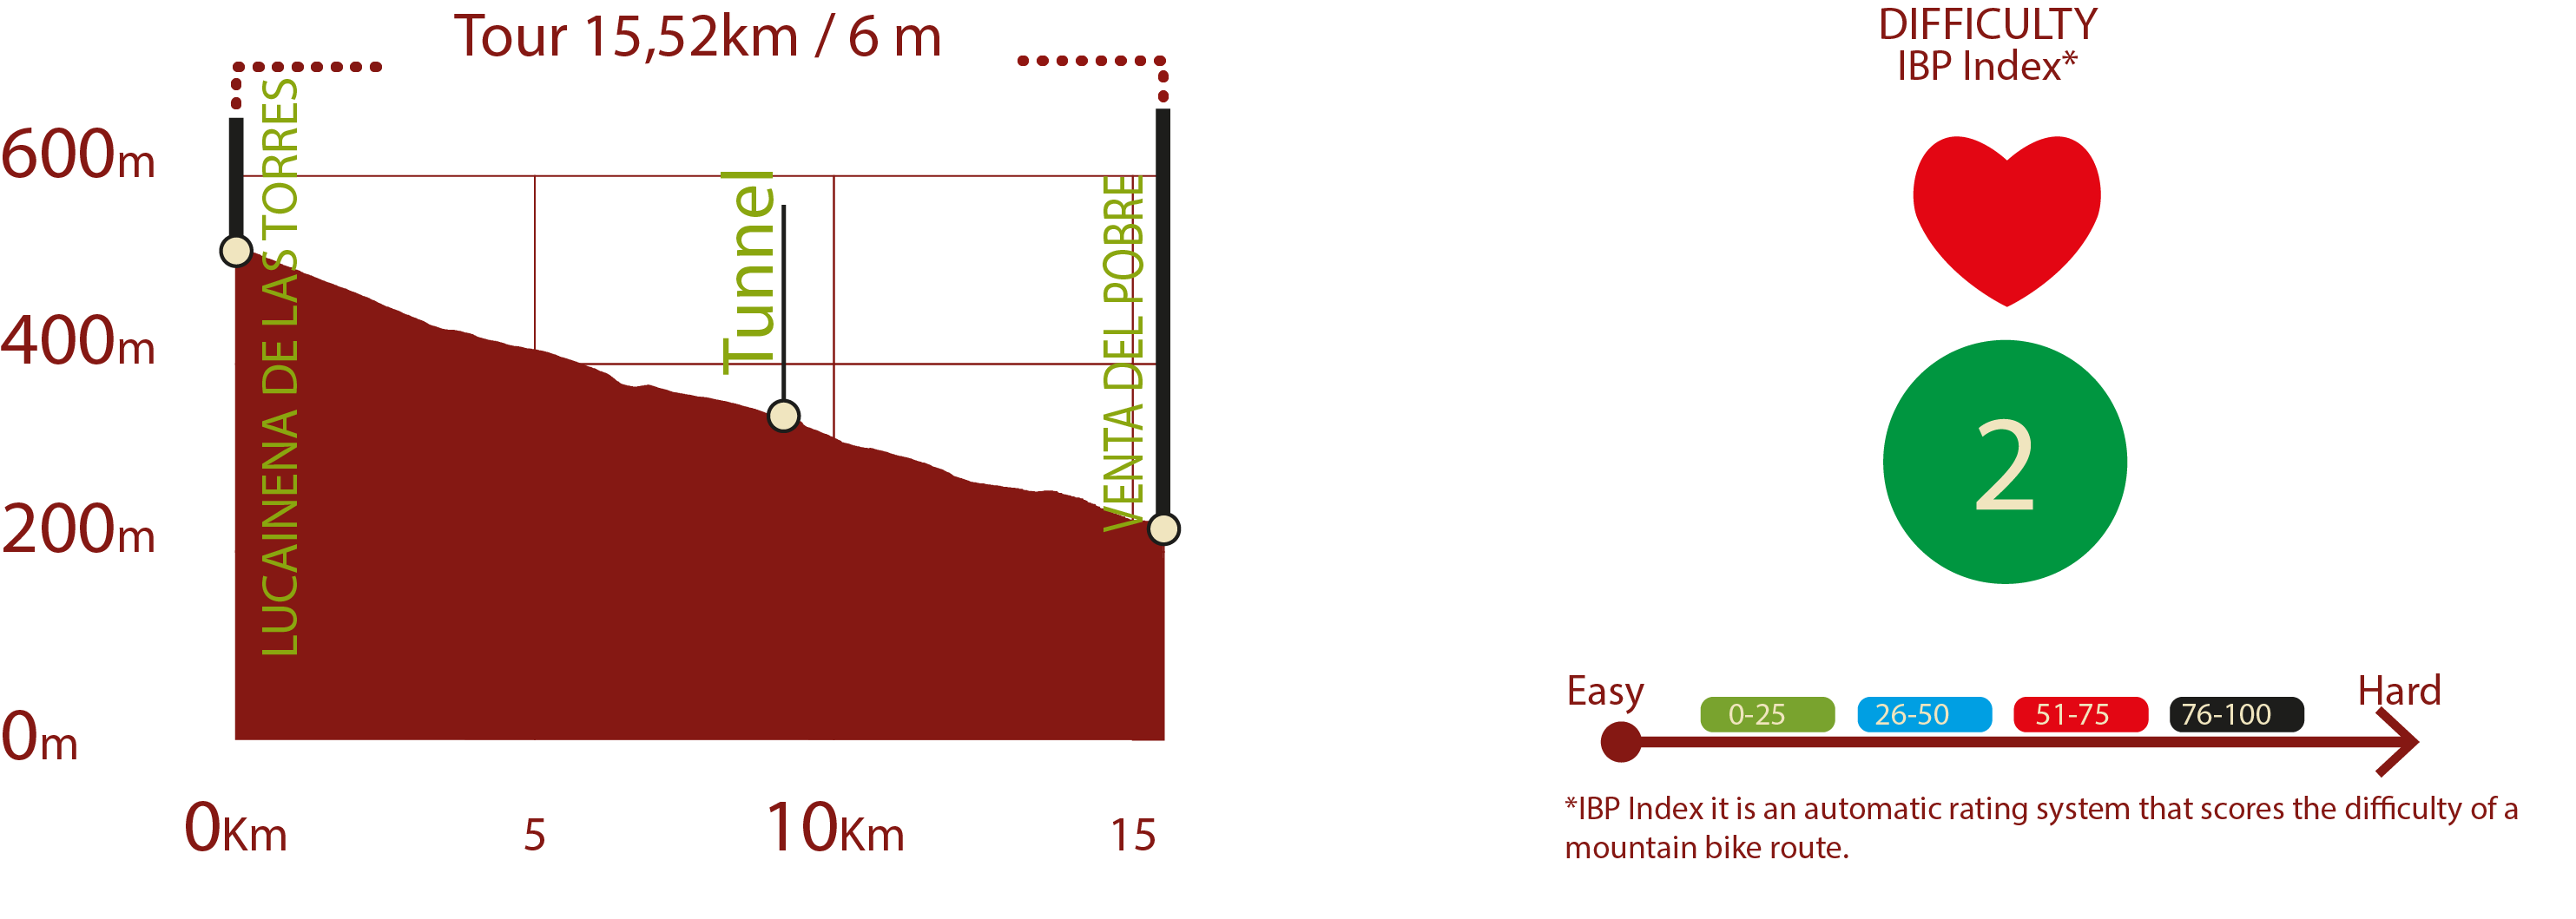 Profile & IBP
Profile of Lucainena de las Torres to Agua Amarga itinerarie: 15,52 km/ 6 m upward gradient
IBP 2: Easy

